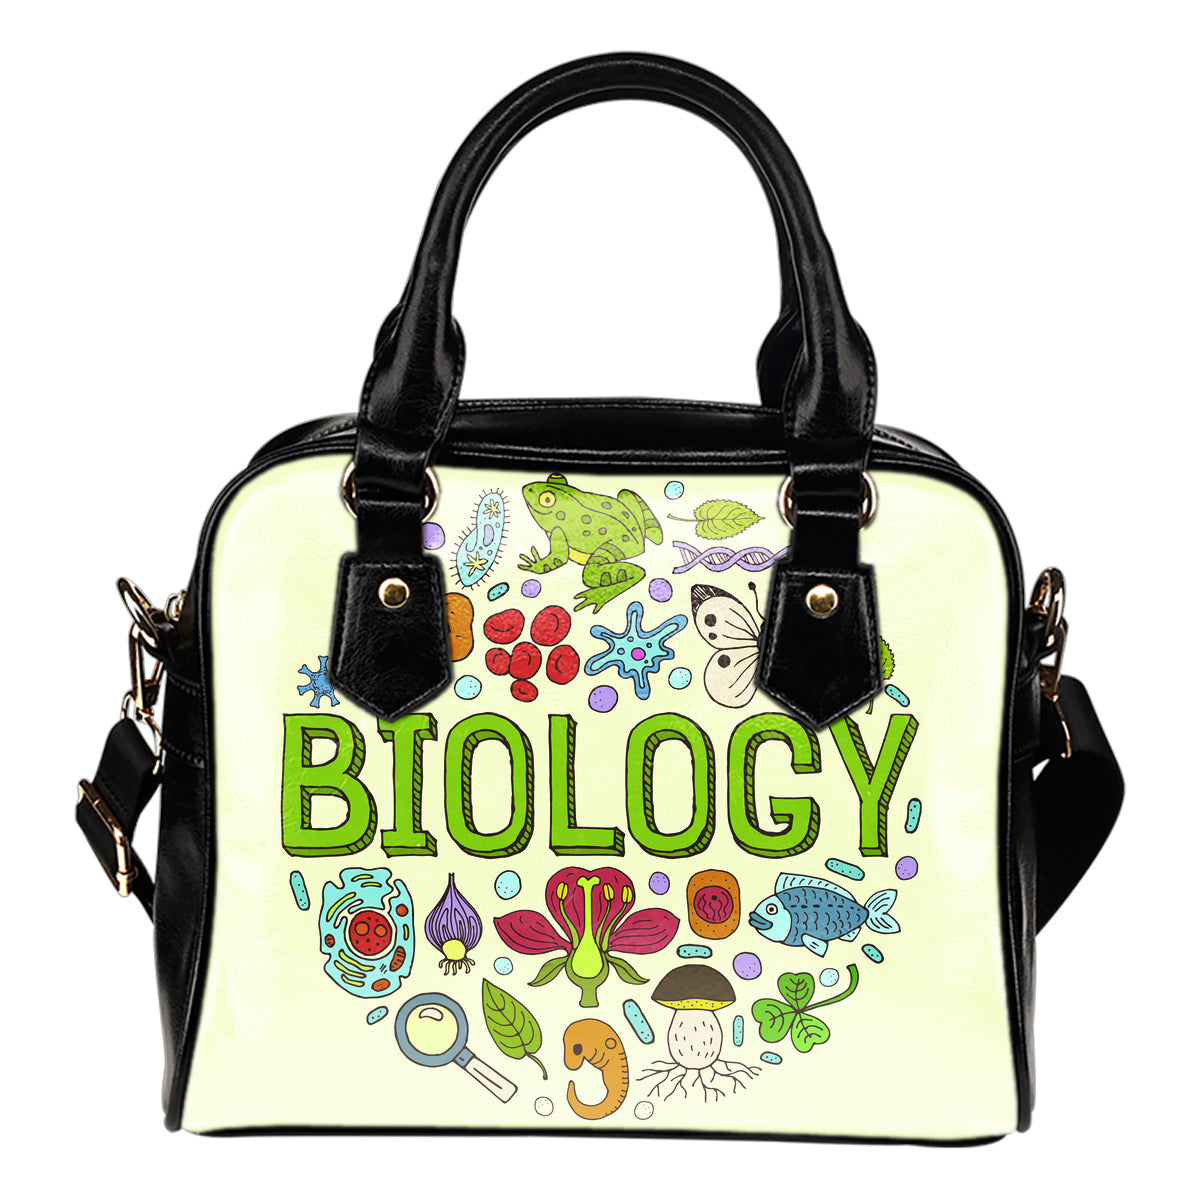 Biology Lovers Handbag